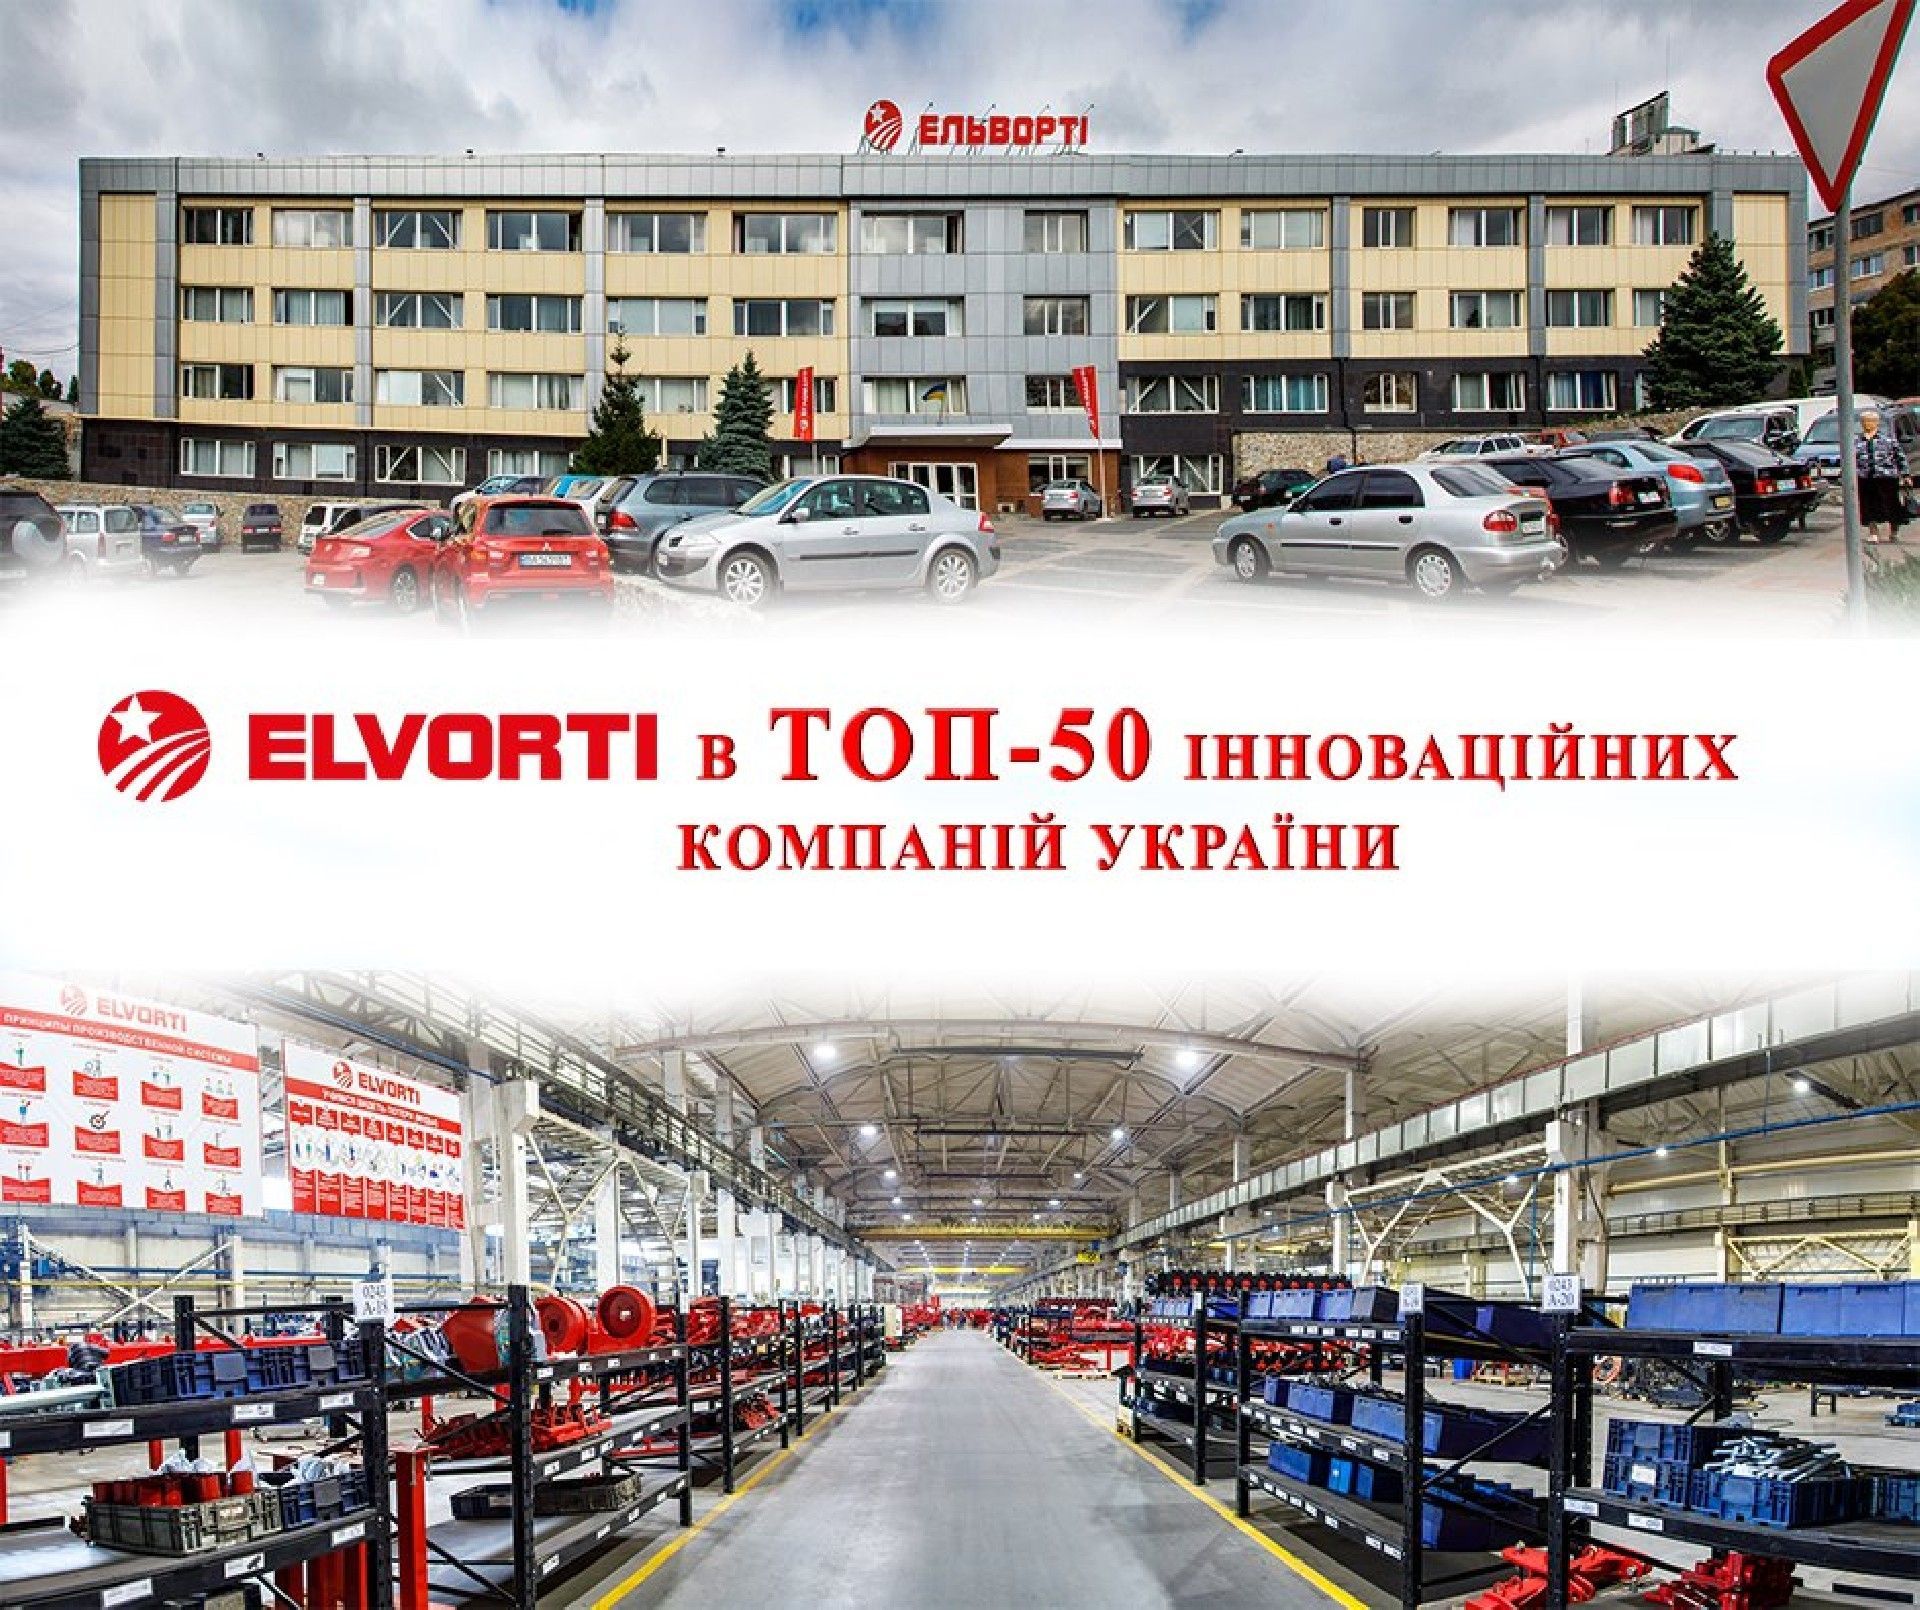 ELVORTI - в ТОП-50 инновационных компаний Украины!